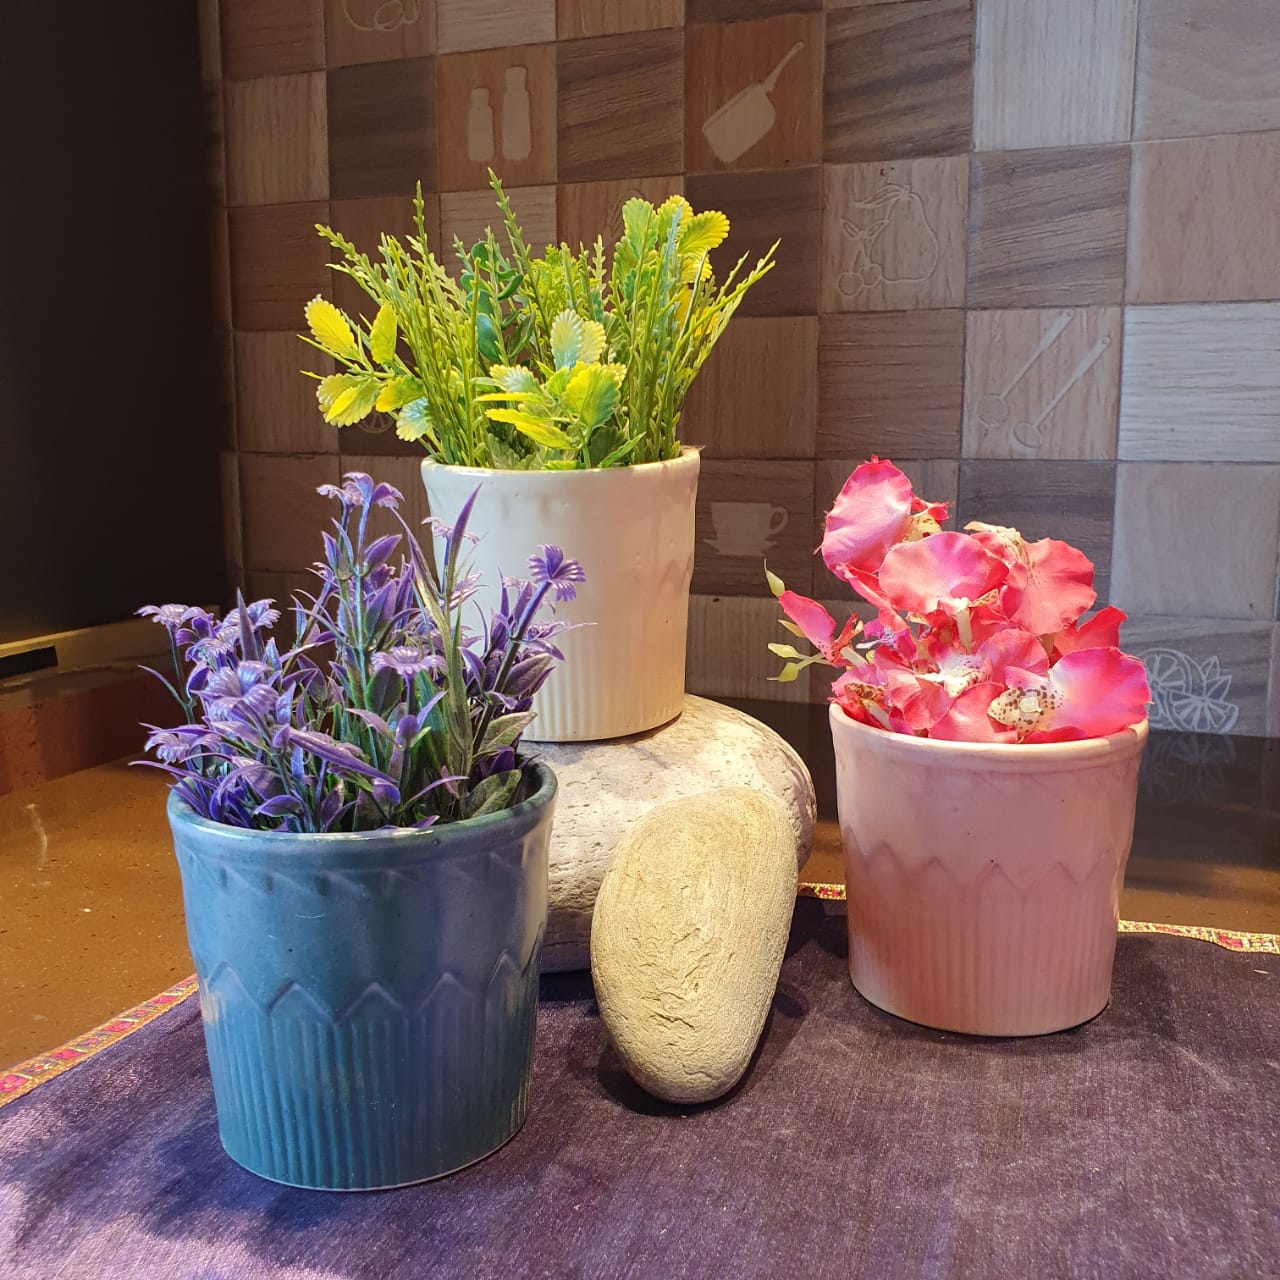 Pastel Planters Set of 3 Ceramic Planter, Outdoor and Indoor Planter, Ceramic Planter for Real Plants, Desk Planters, 9.5 x 9.5 x 9 cm